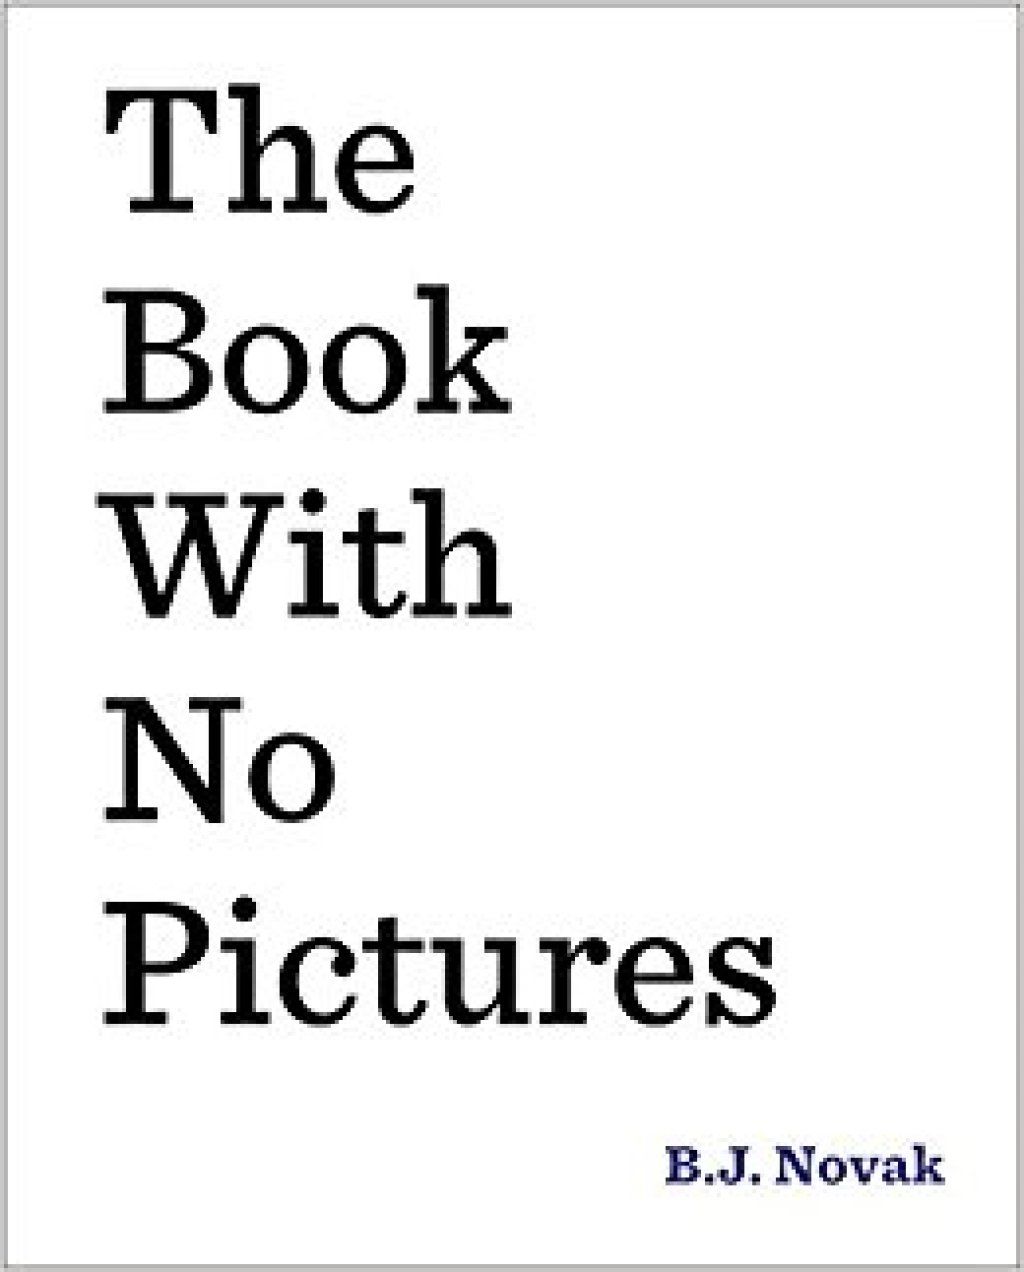 O livro sem imagens B.J. Novak piadas de crianças